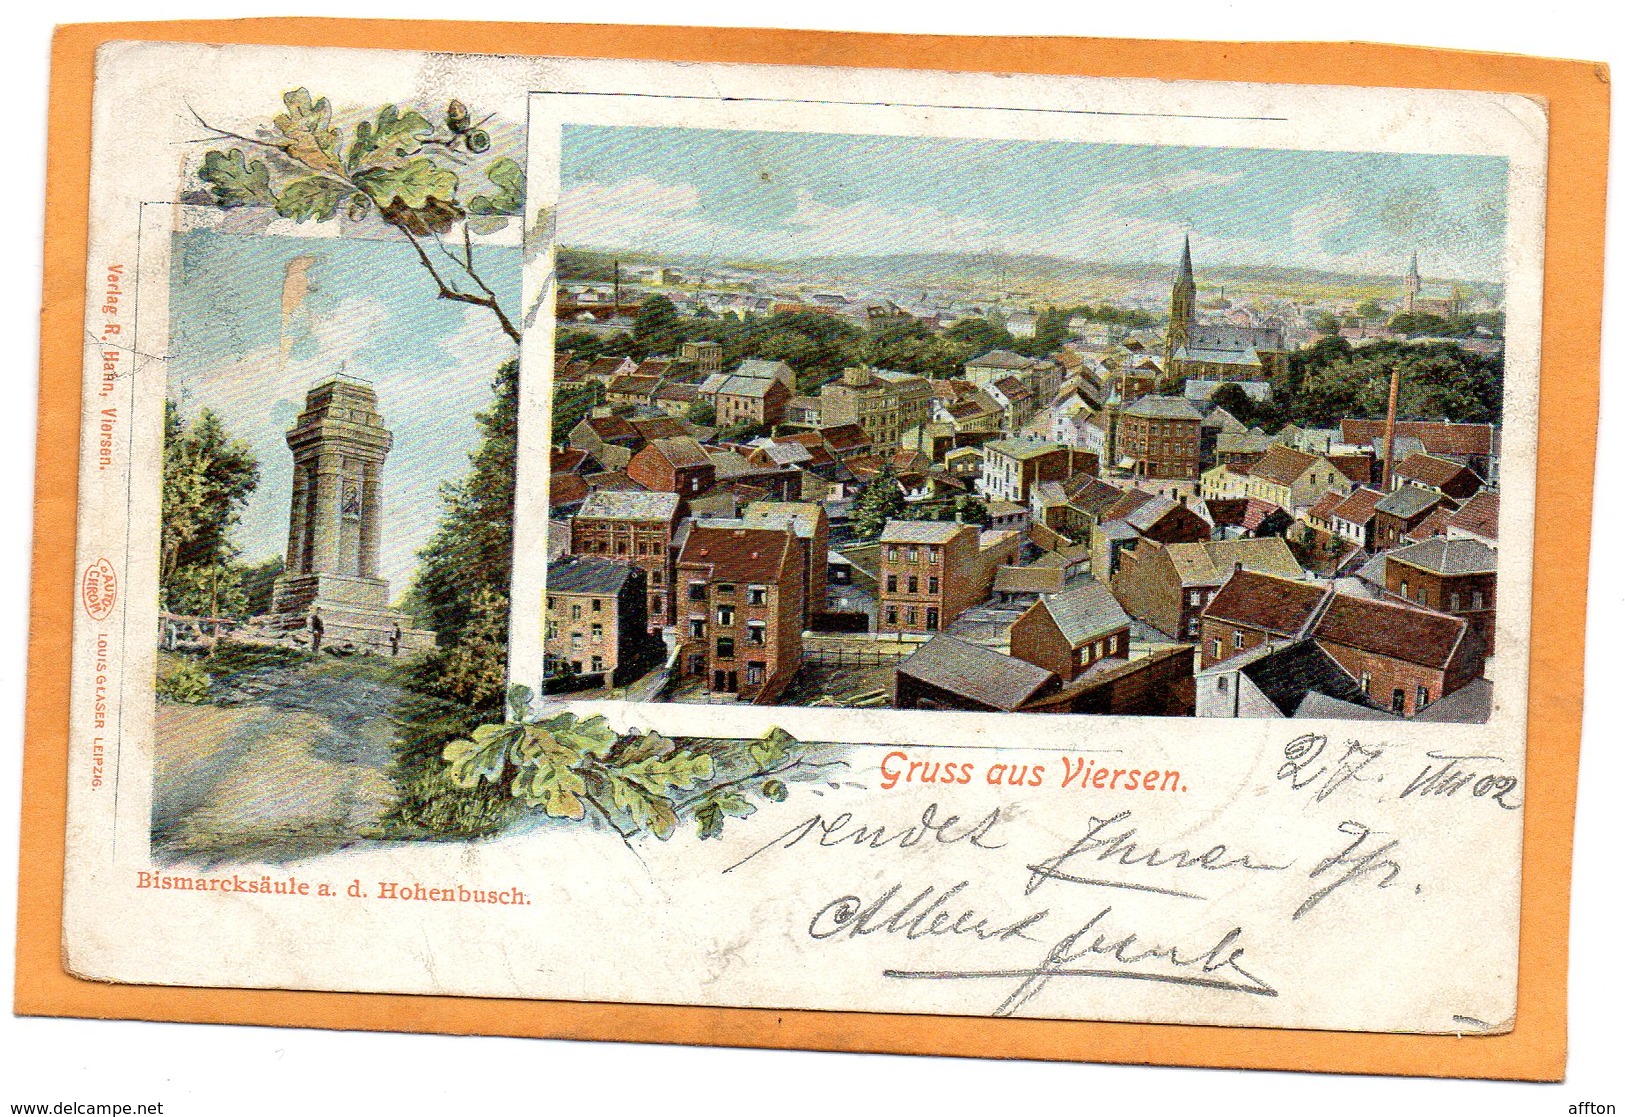 Gruss Aus Viersen 1902 Postcard - Viersen